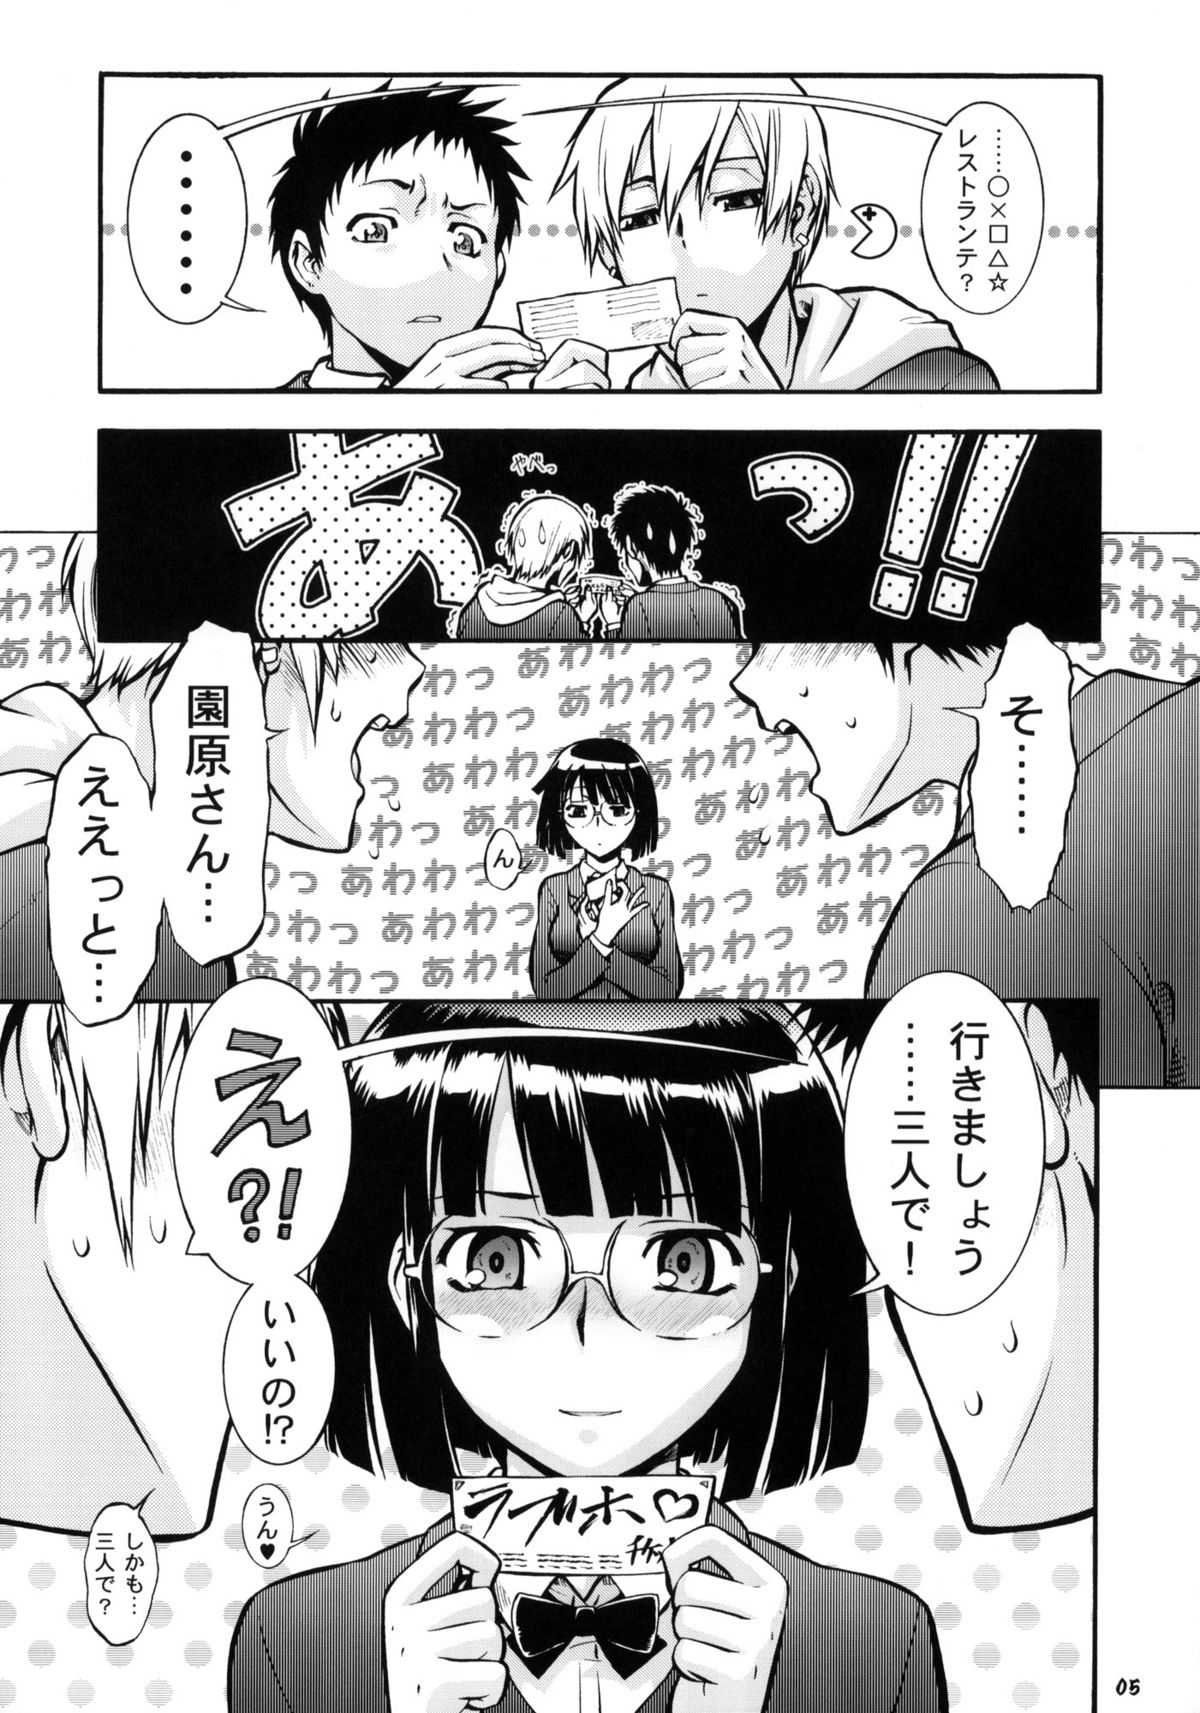 (COMIC1☆4) [Tsurikichi Doumei] W Poron-Kougouimashita！~Daradara~ (Durarara!! / Dragon Ball) (COMIC1☆4) (同人誌) [釣りキチ同盟] Wポロン-交合いましたァ！~だらだら~ (デュラララ！/ ドラゴンボール)